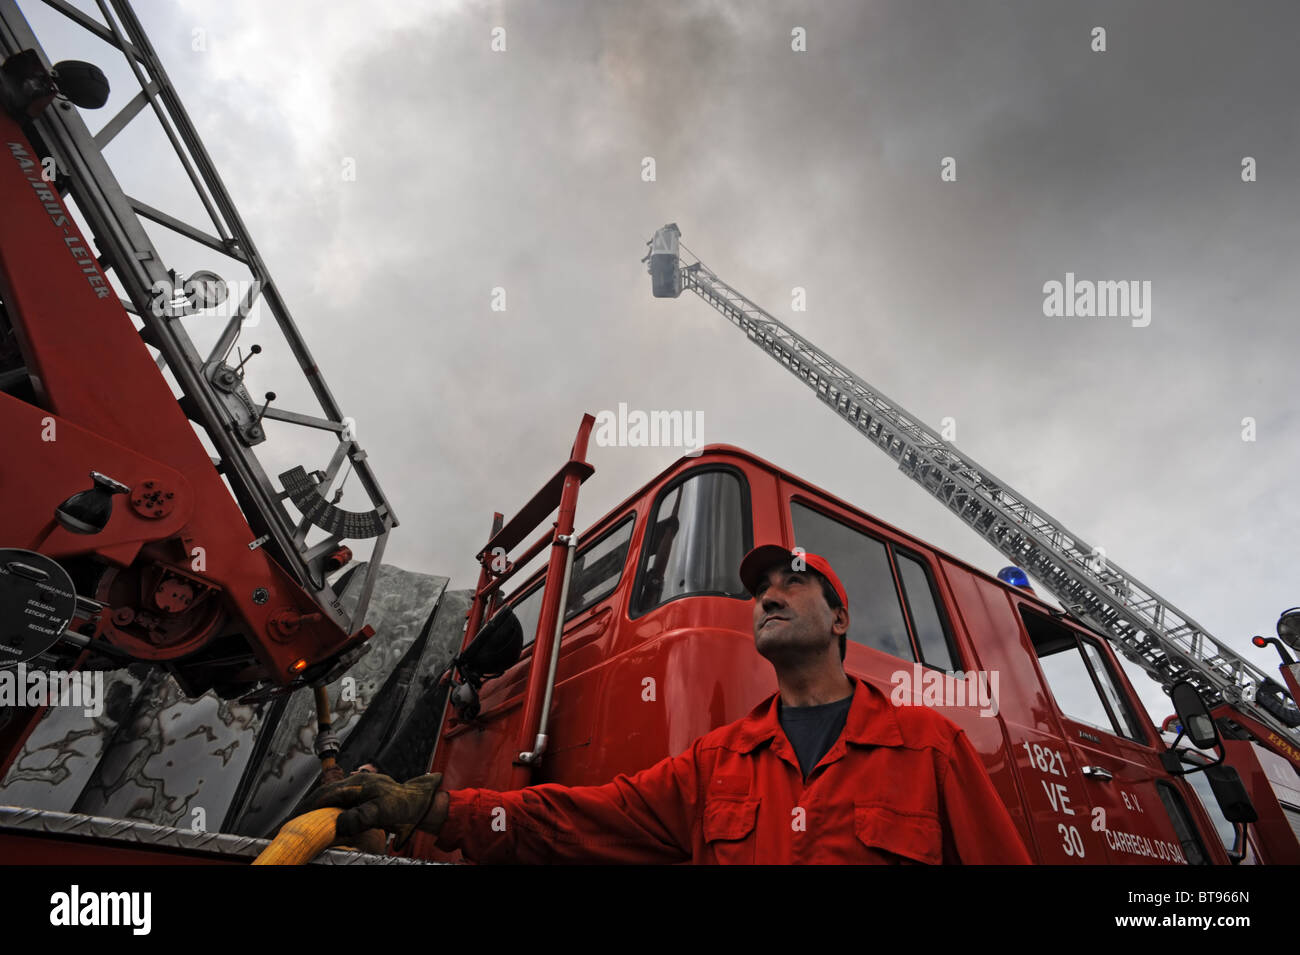 Fireman mirando hacia arriba al lado de un camión de bomberos con una escalera de extensión Foto de stock